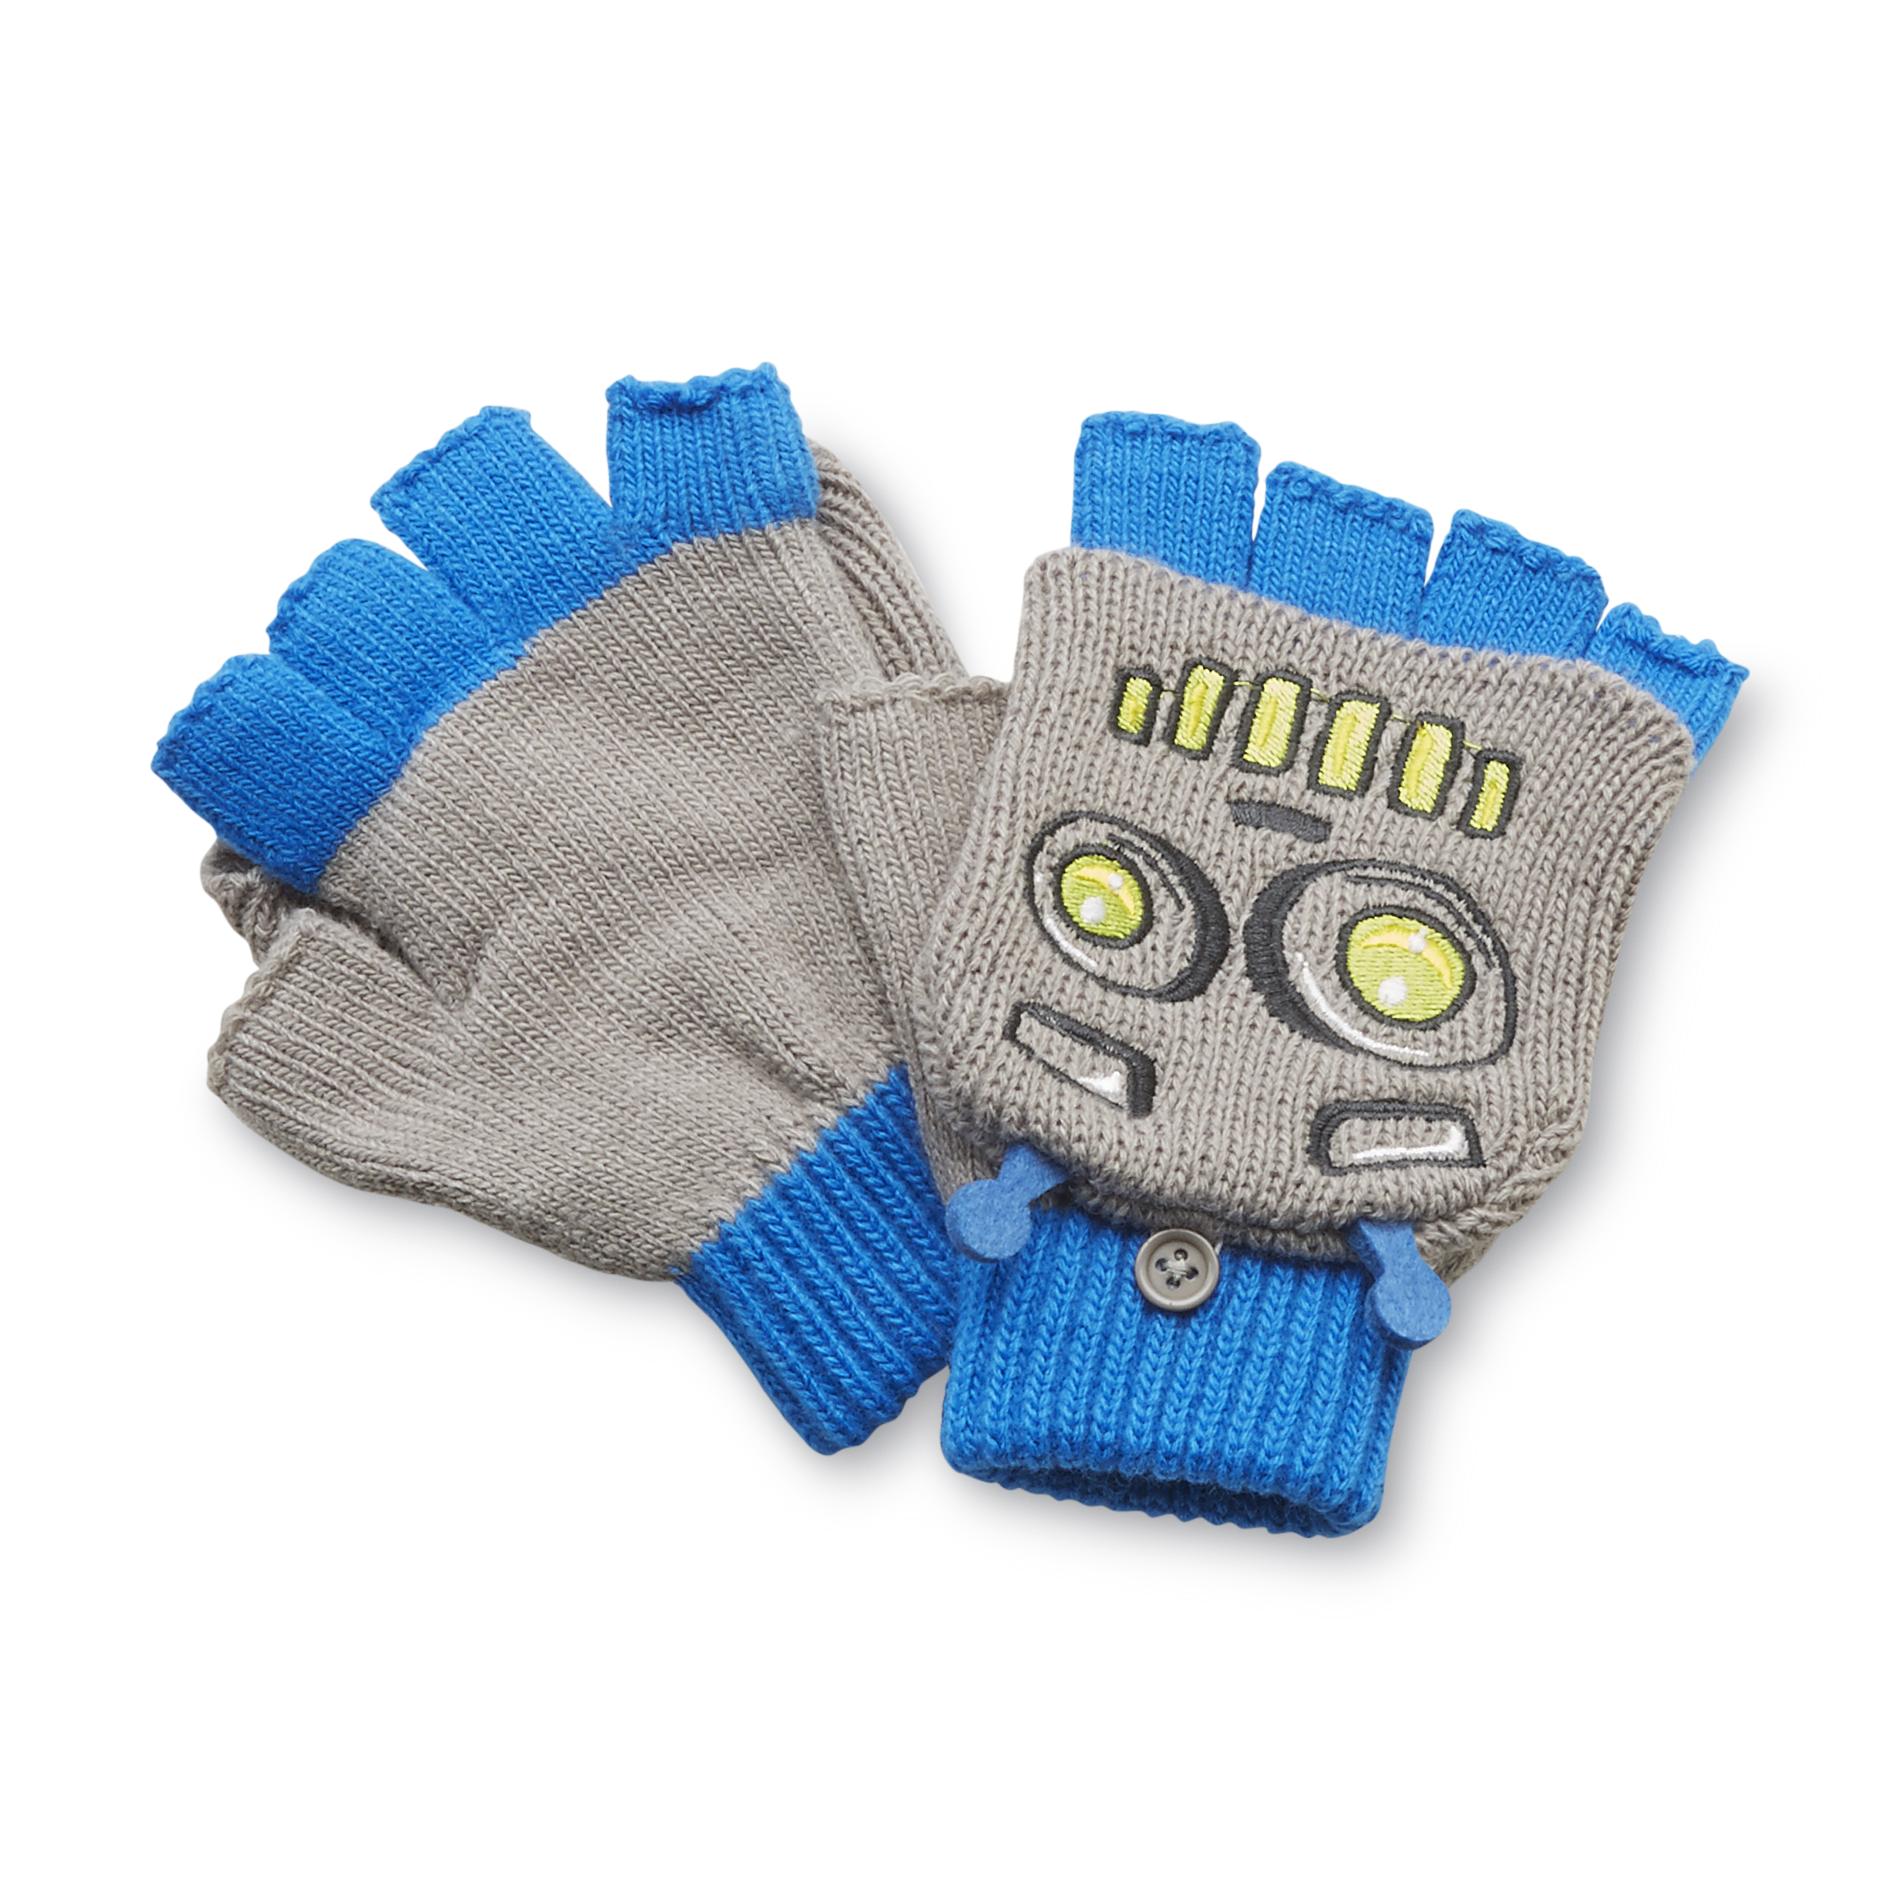 Athletech Boy's Flip-Top Fingerless Gloves - Robot